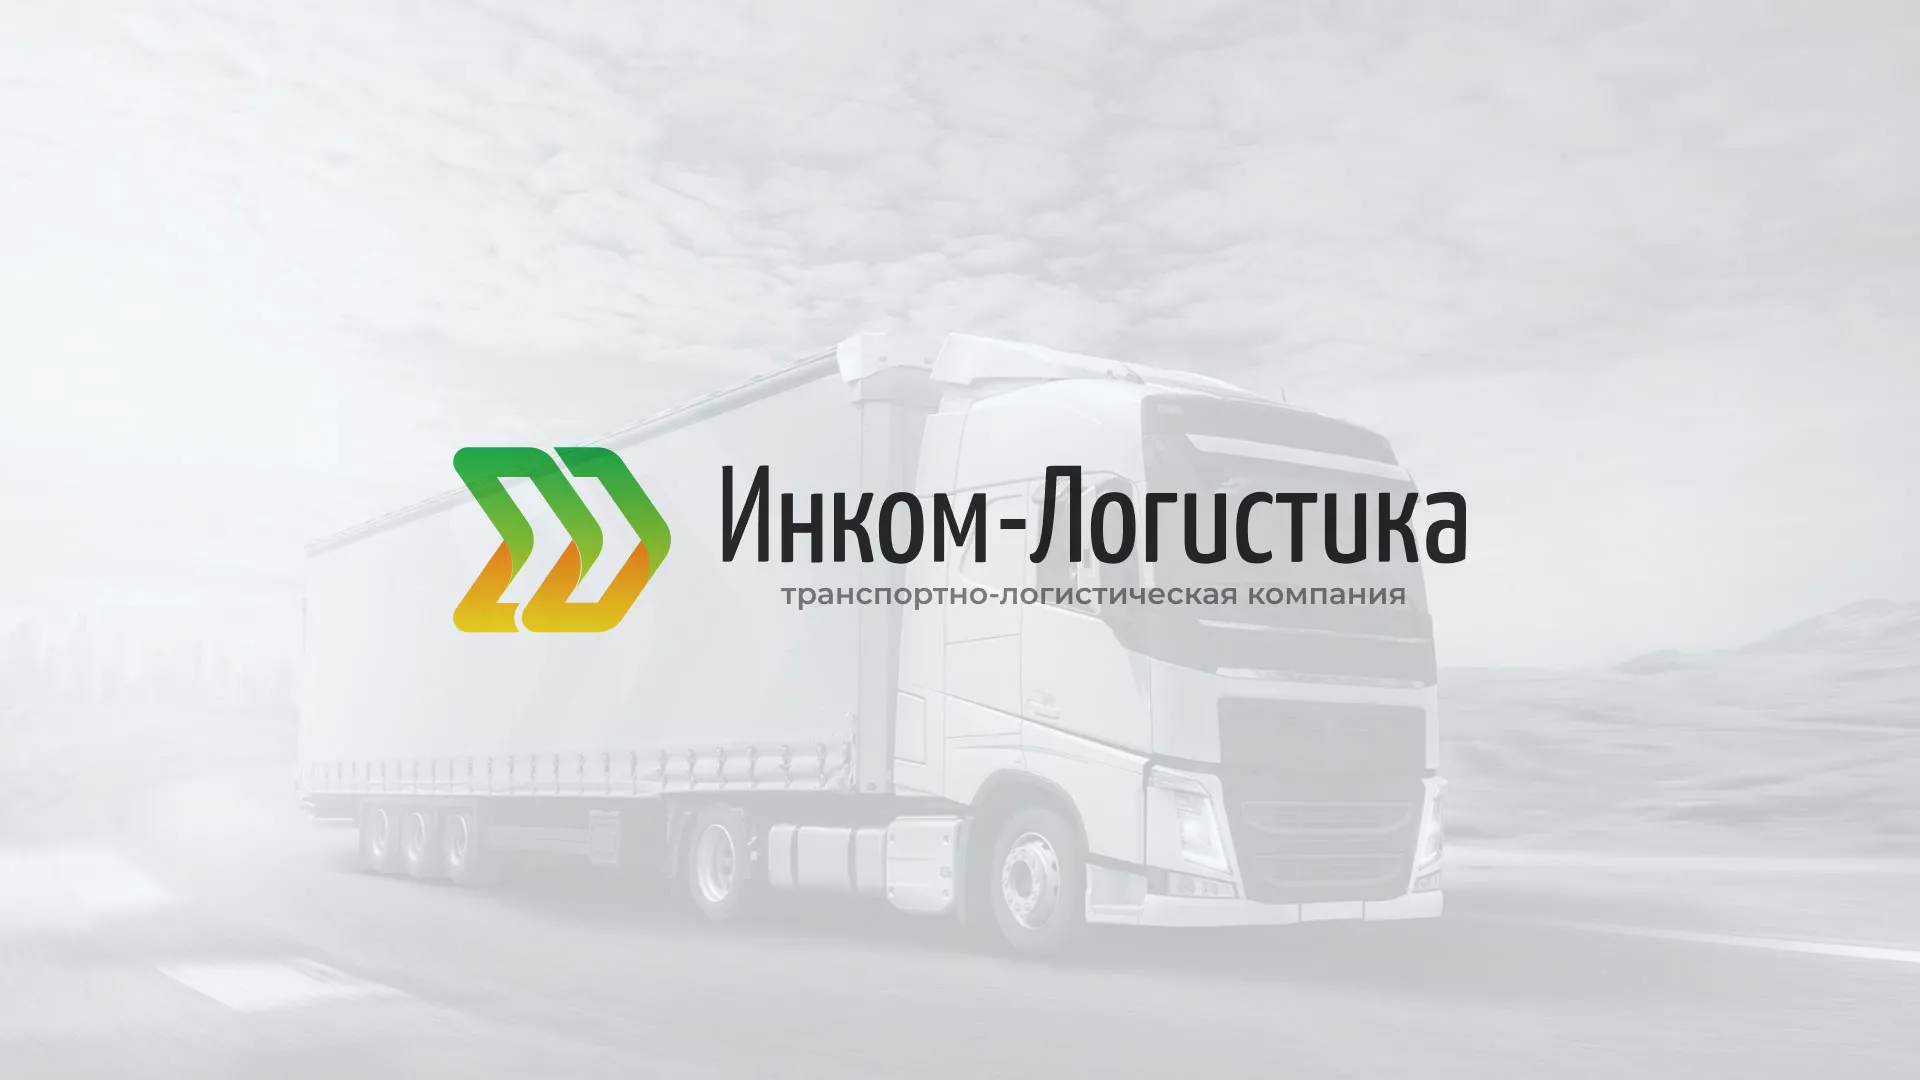 Разработка логотипа и сайта компании «Инком-Логистика» в Казани